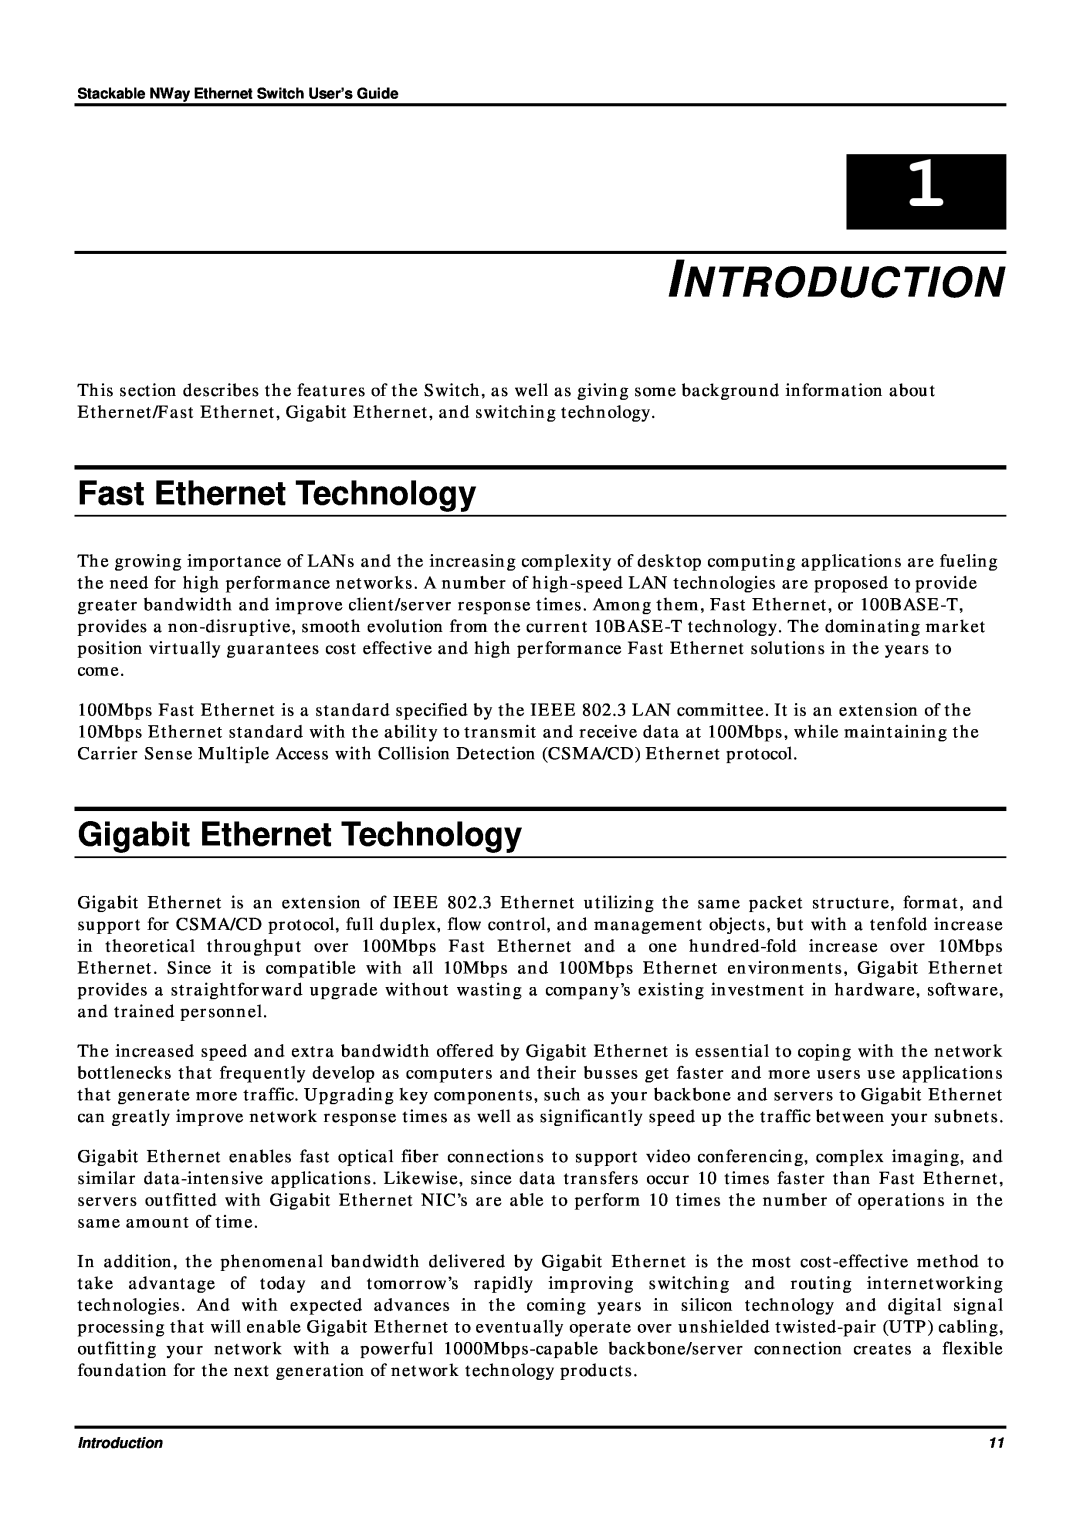 D-Link DES-3624 manual Introduction, Fast Ethernet Technology, Gigabit Ethernet Technology 